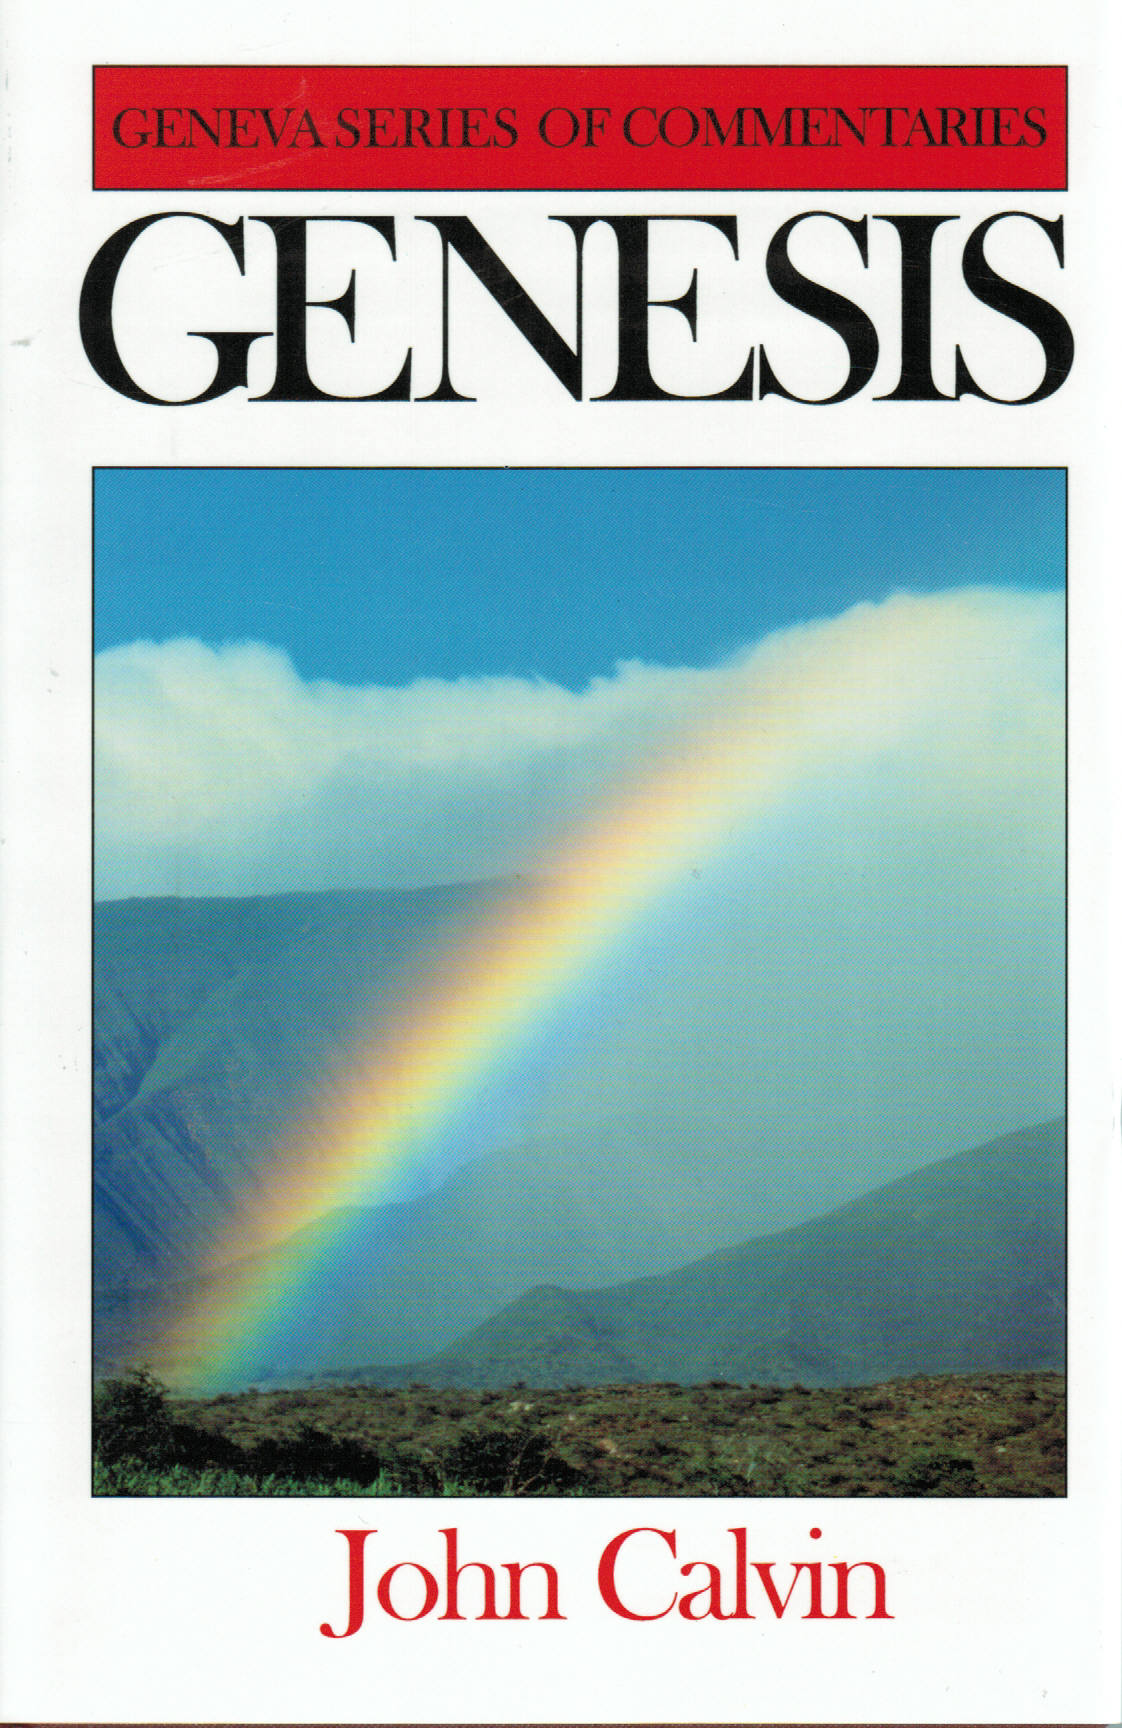 Geneva Series of Commentaries - Genesis